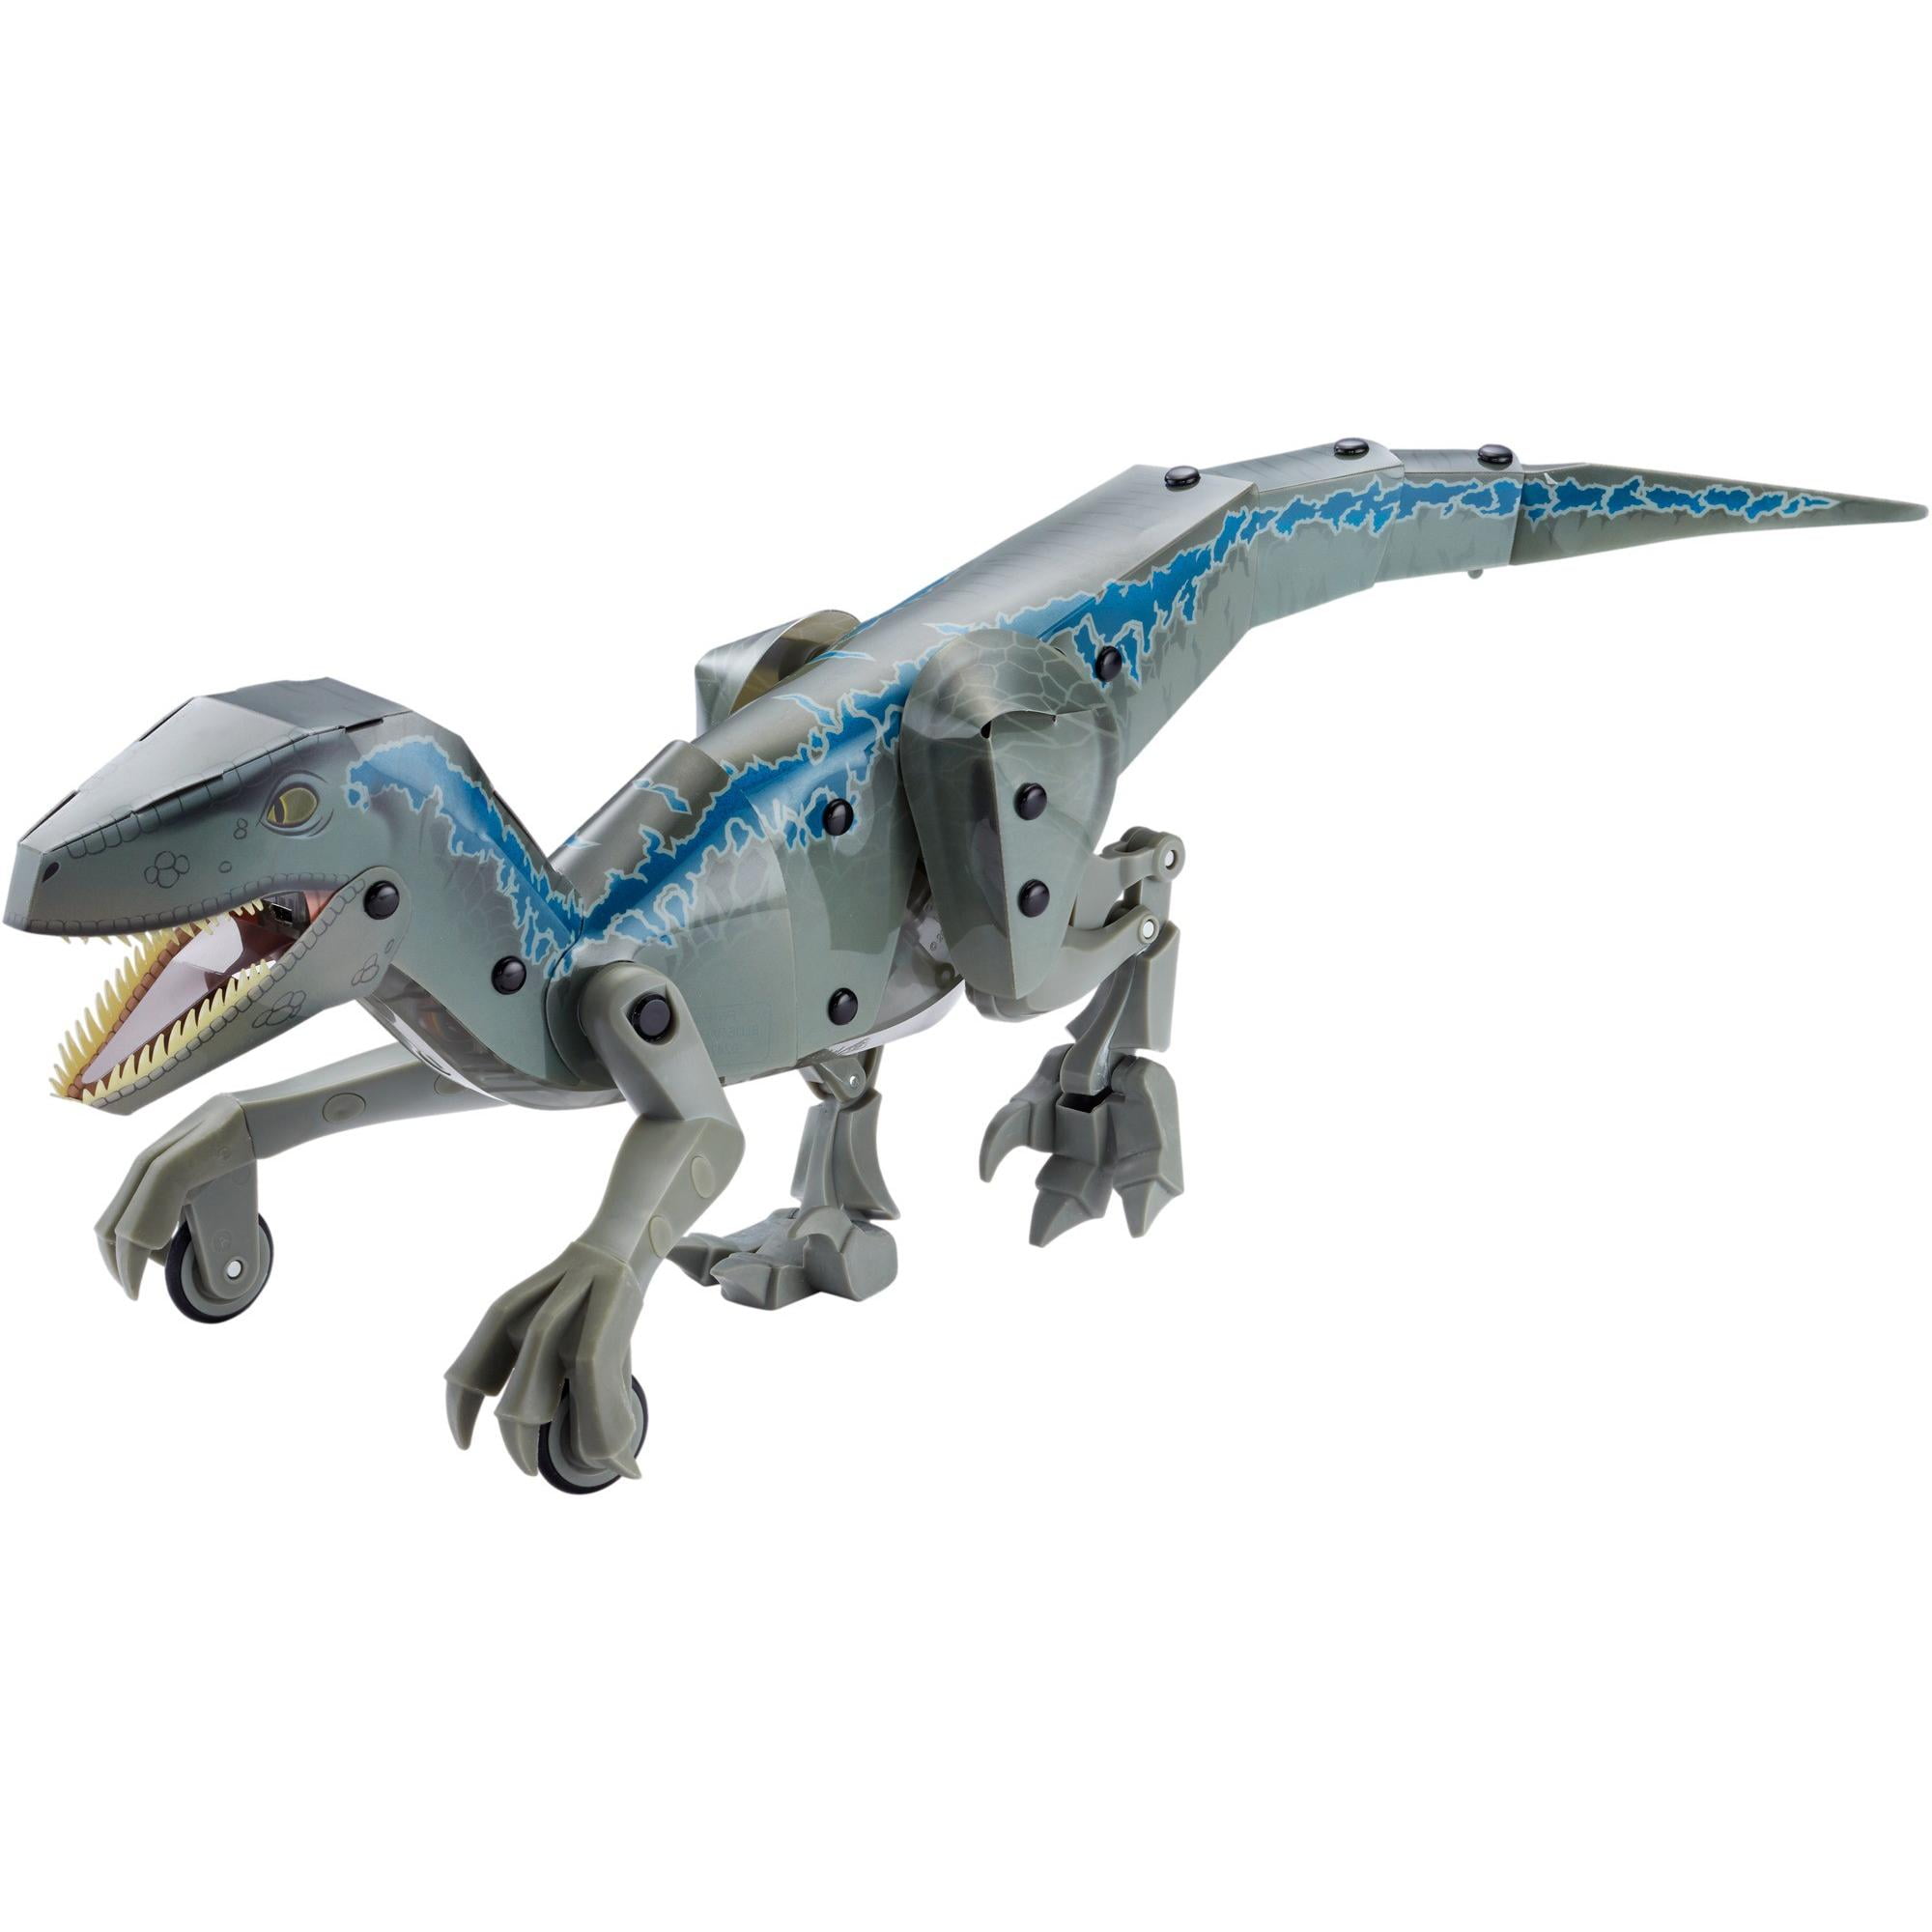 Kamigami Jurassic Robot "Blue" Velociraptor Dinosaur - Walmart.com